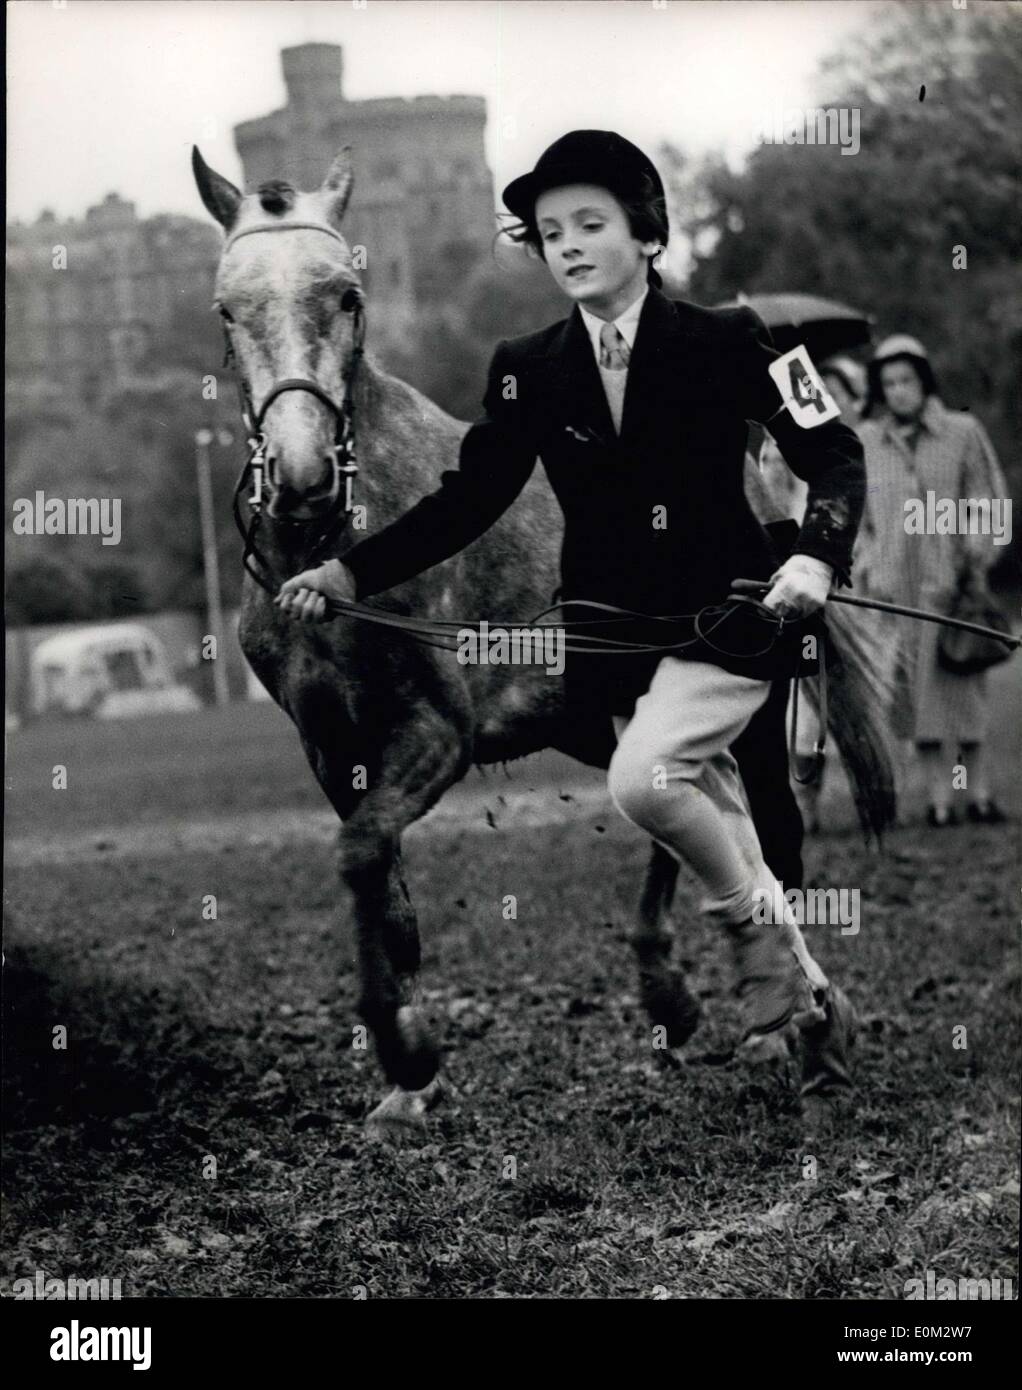 16 mai 1953 - Royal Windsor Horse Show mettant le poney à travers ses pages. : Photo montre Mademoiselle Jabeena Maslin met sa variété de poney au pas - lorsqu'il prend part à la classe de poney pour les enfants nés en 1941 ou après - pendant le Royal Windsor Horse Show aujourd'hui. Banque D'Images